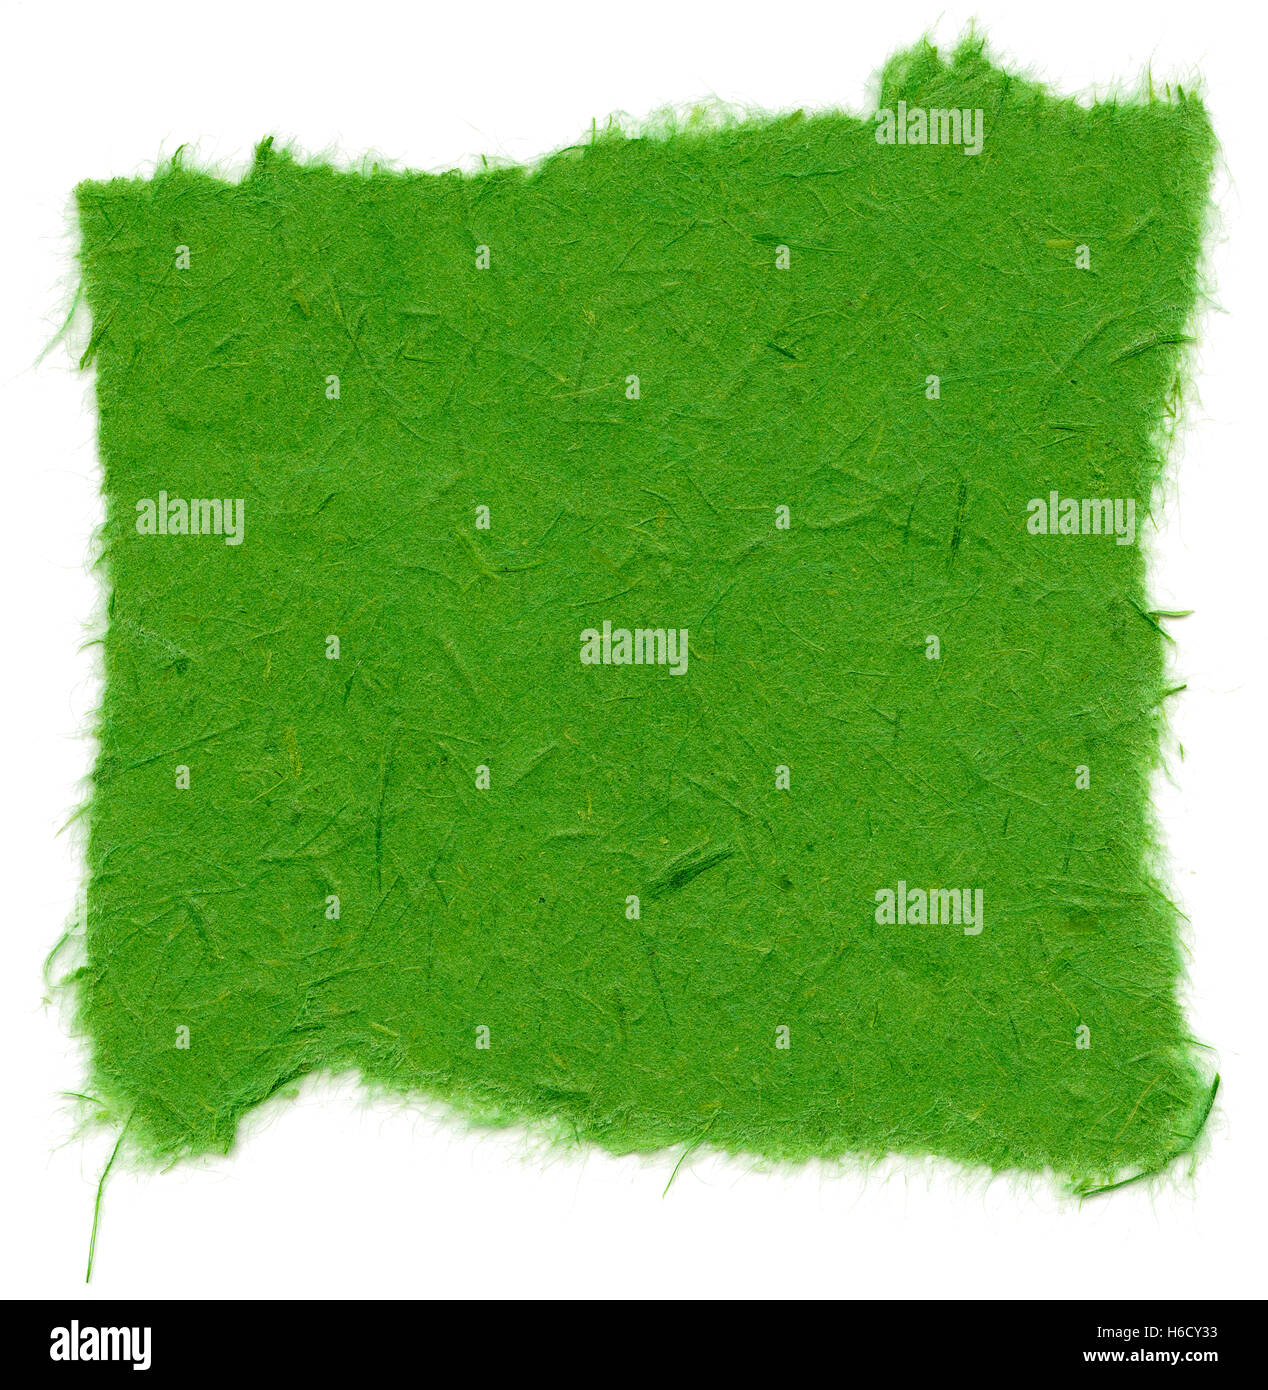 Beschaffenheit von Indien grün Reispapier mit zerrissenen Kanten. Isoliert auf weißem Hintergrund. Bei 2400dpi mit einem professionellen Scanner gescannt Stockfoto